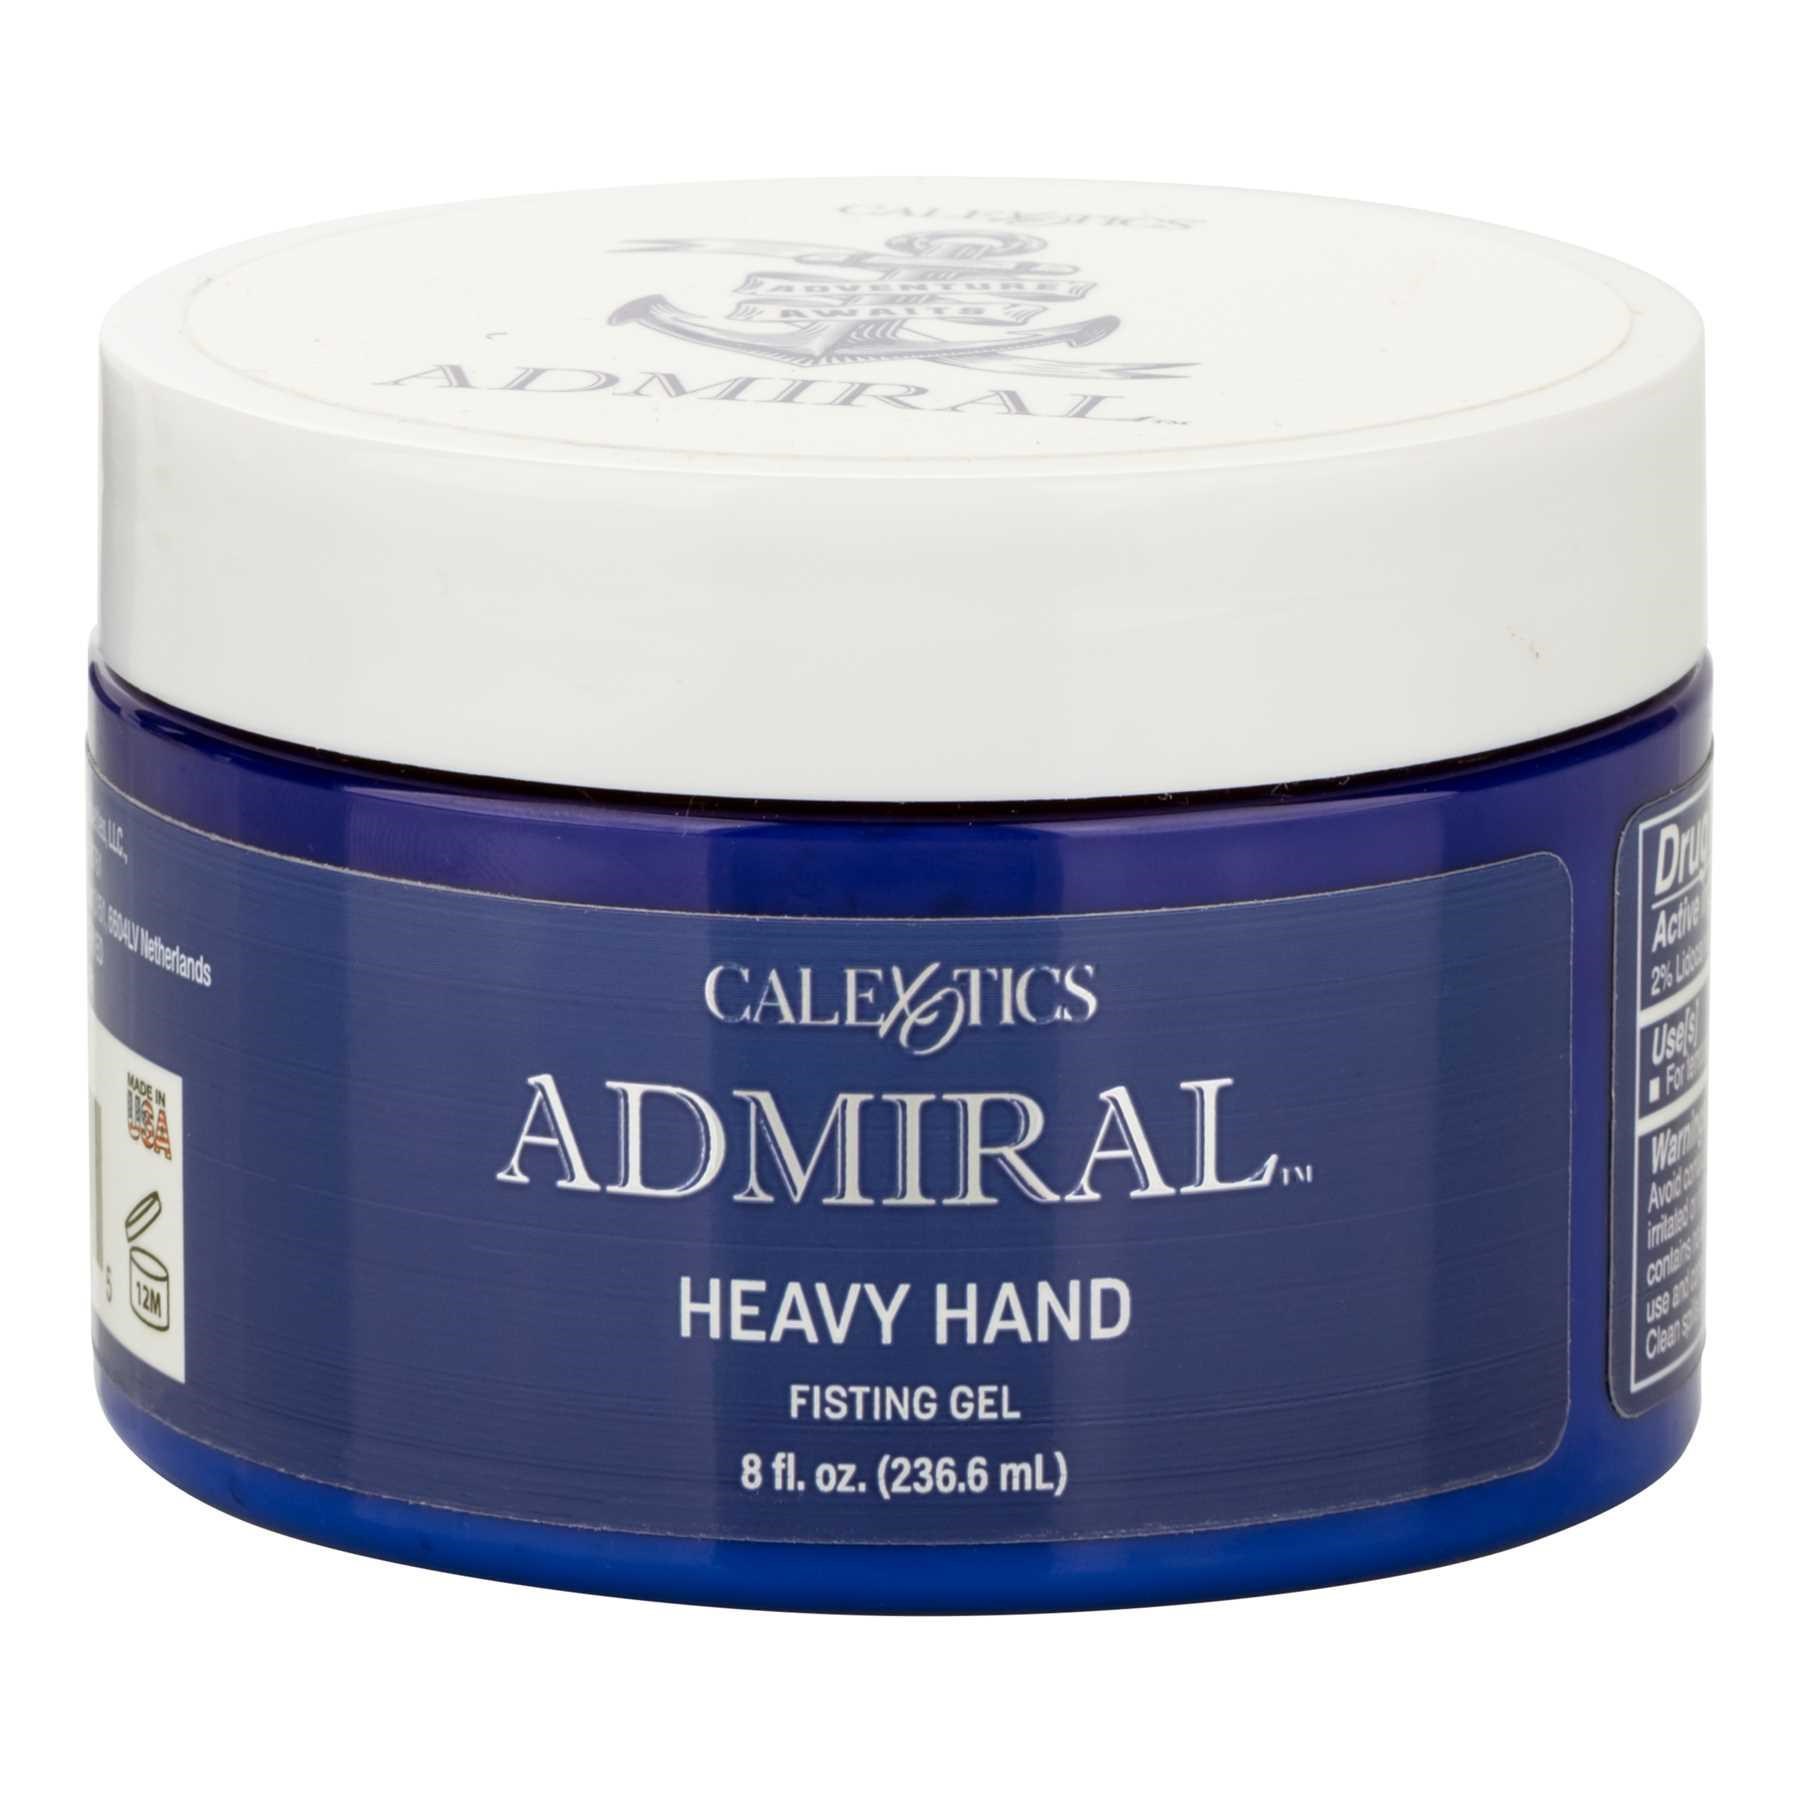 Admiral Heavy Hand Fisting Gel Jar